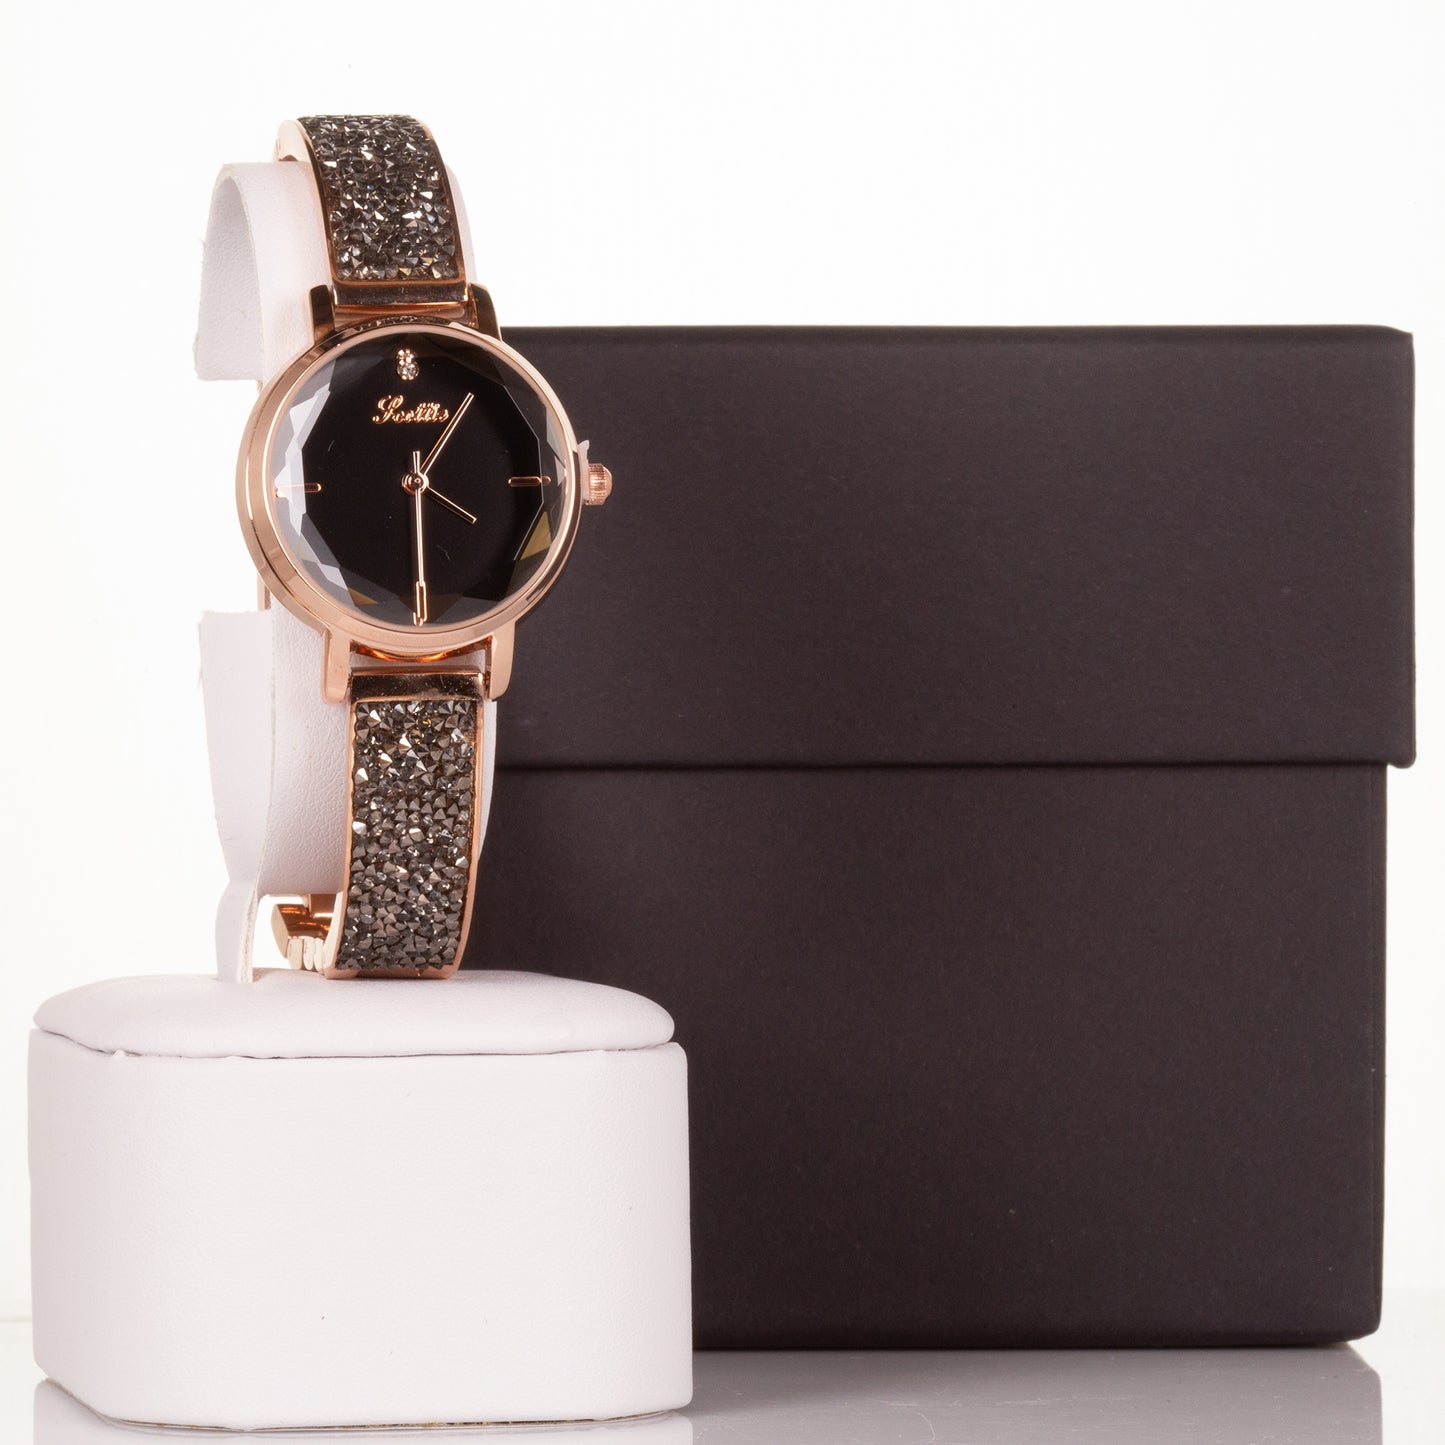 Vysoce kvalitní slitinové hodinky s mechanismem Miyota v dárkové krabičce, Černý ciferník